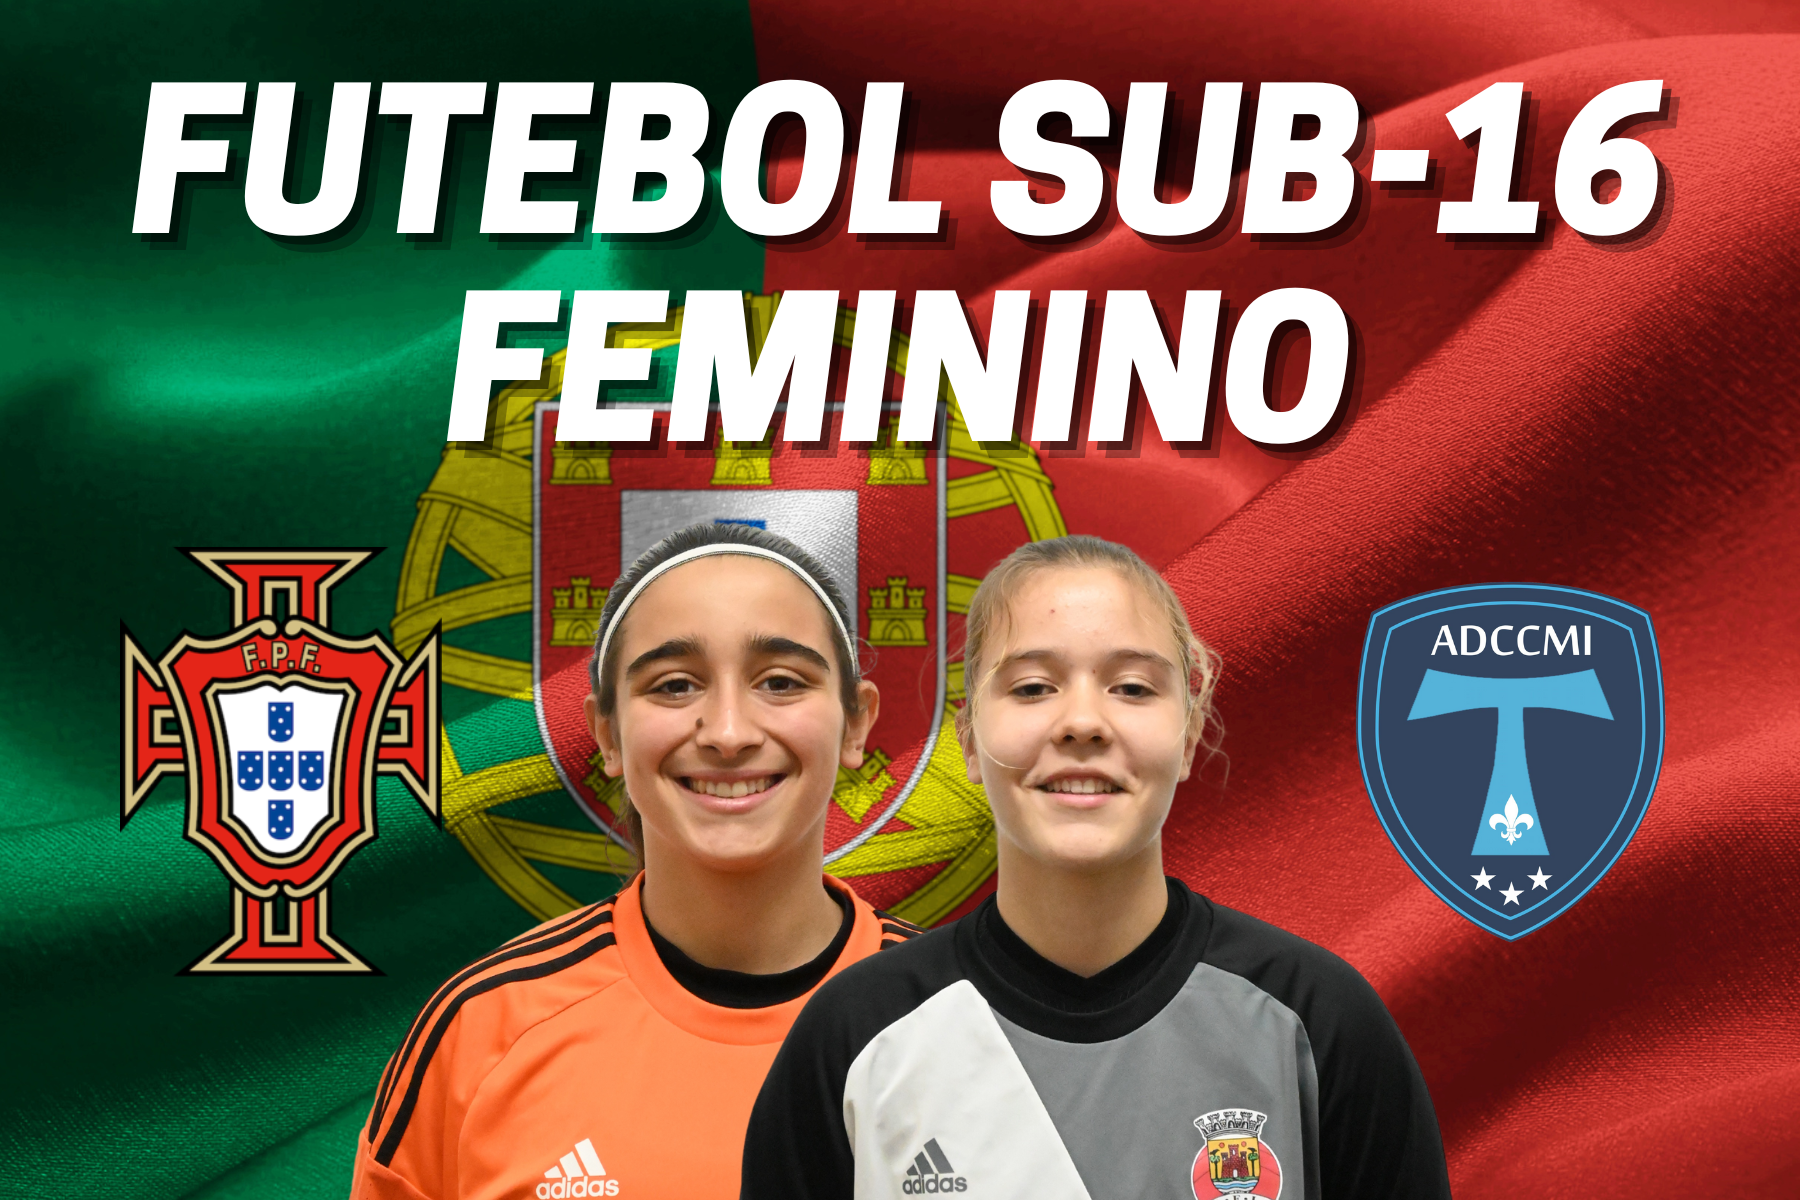 Ana Machado e Francisca Alexandre convocadas para Estágio da Seleção Nacional Sub-16 de Futebol Feminino